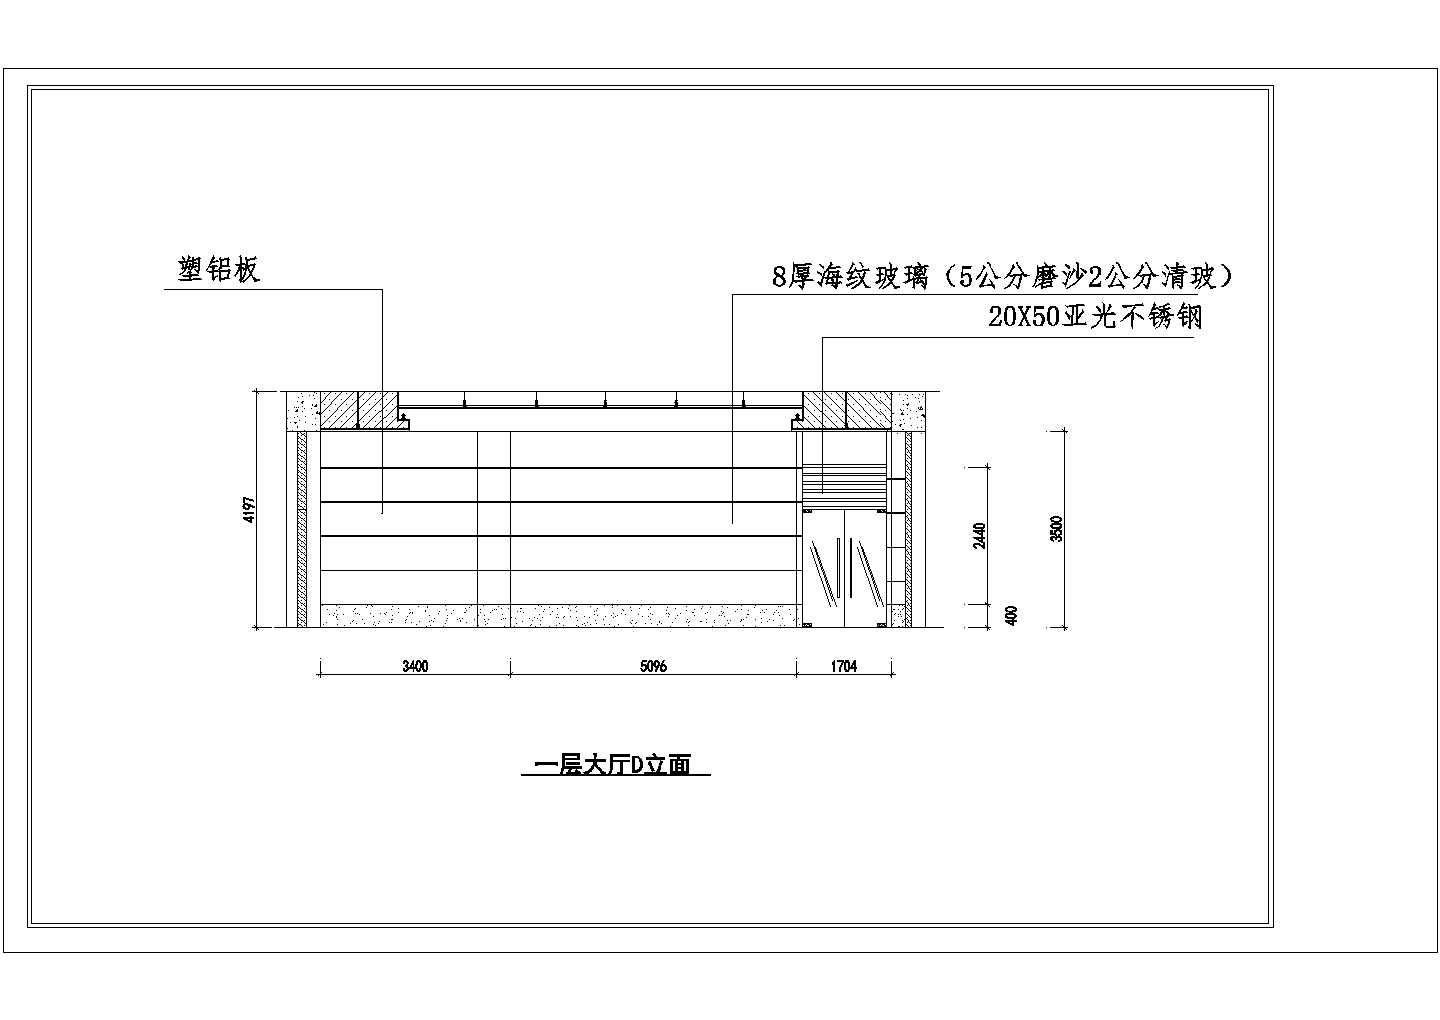 江苏某太阳能公司室内装修设计施工图